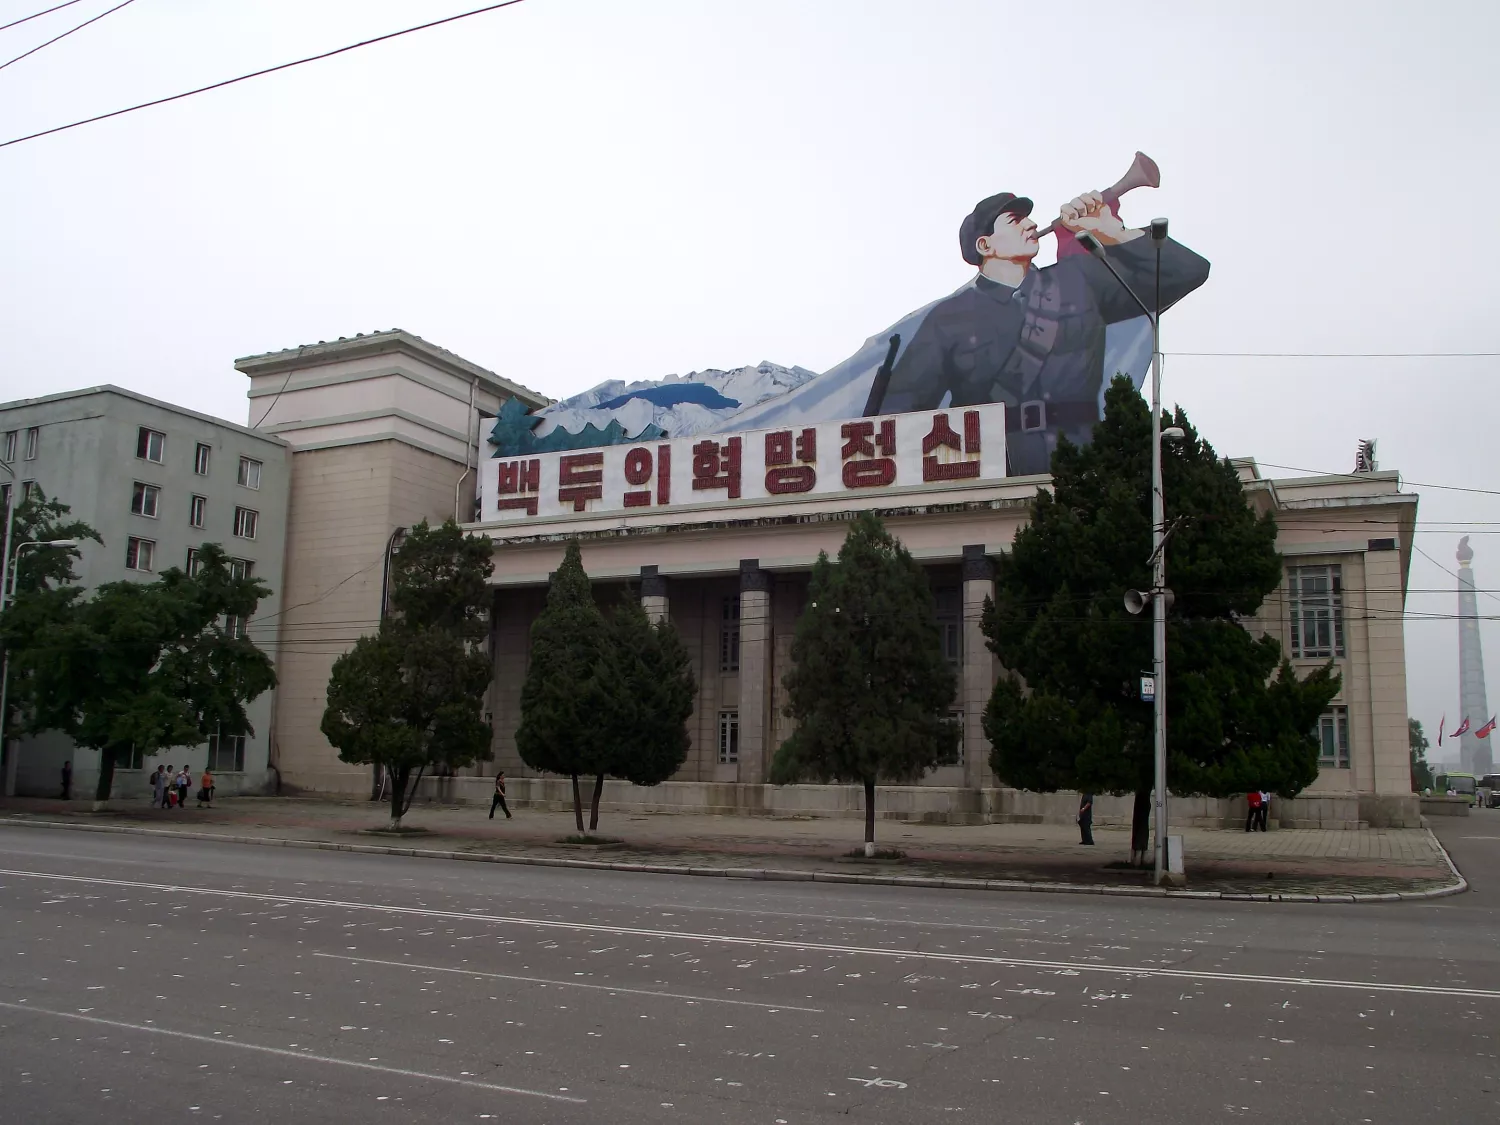 Korean Central History Museum - Pyongyang - North Korea